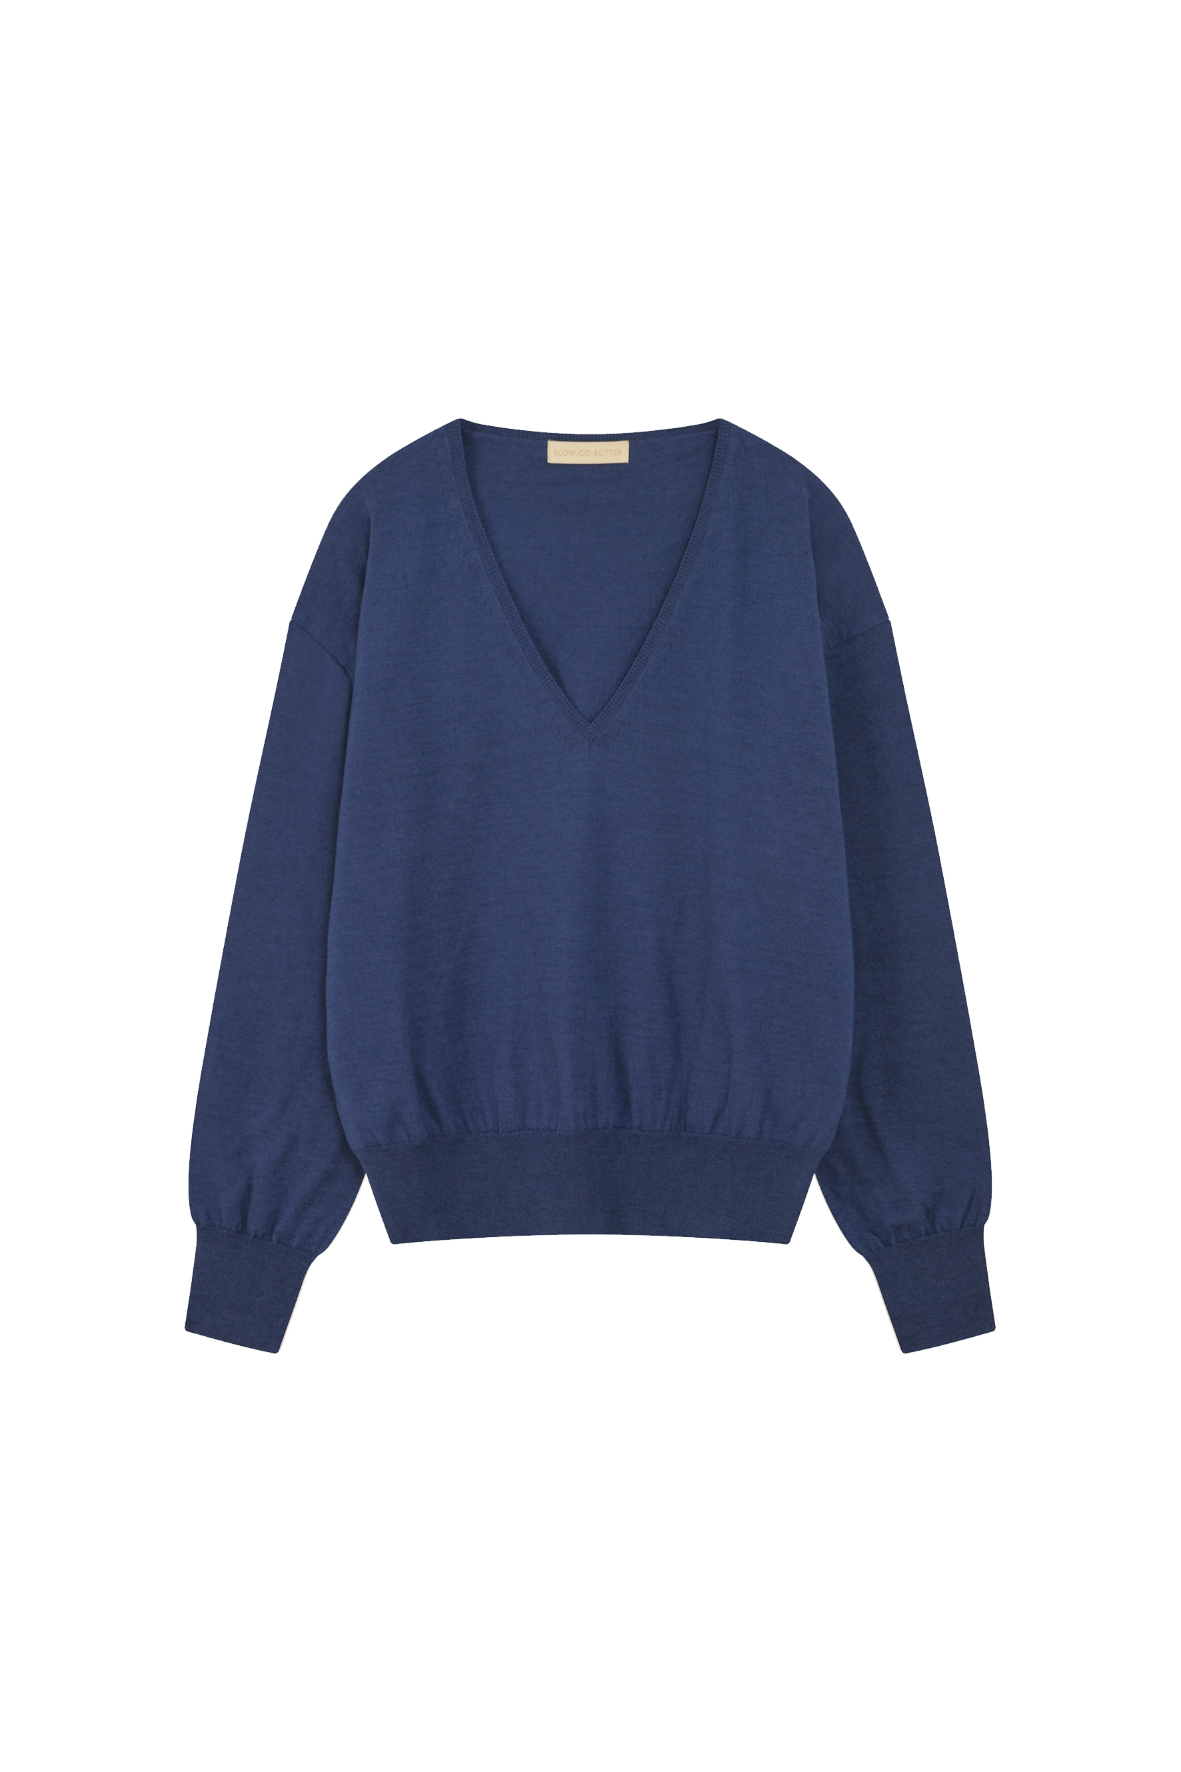 [SLOCO] Jenna v neck cotton knit, blue